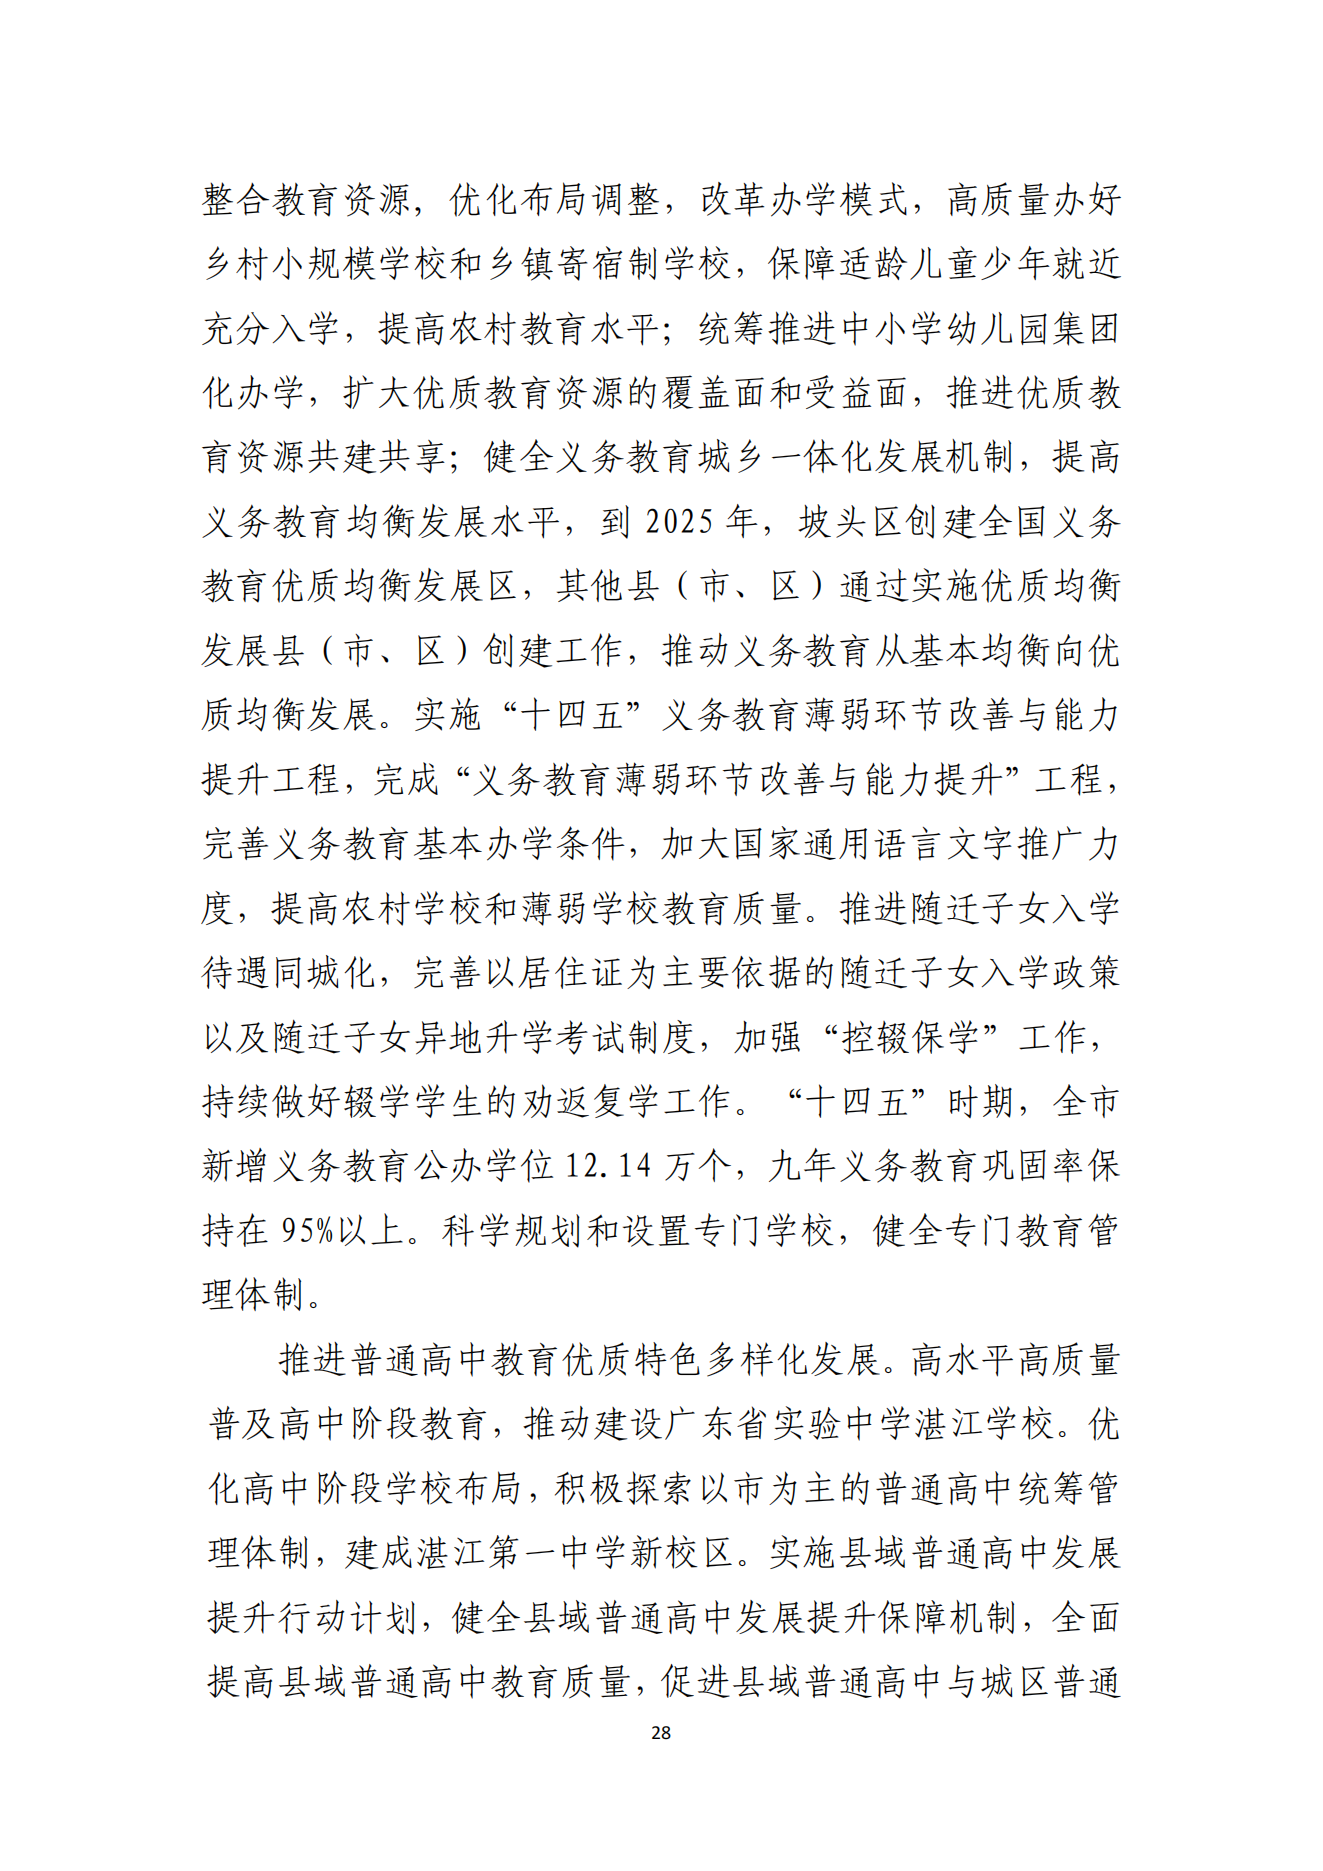 湛江市人民政府办公室关于印发湛江市教育发展“十四五”规划的通知_27.png